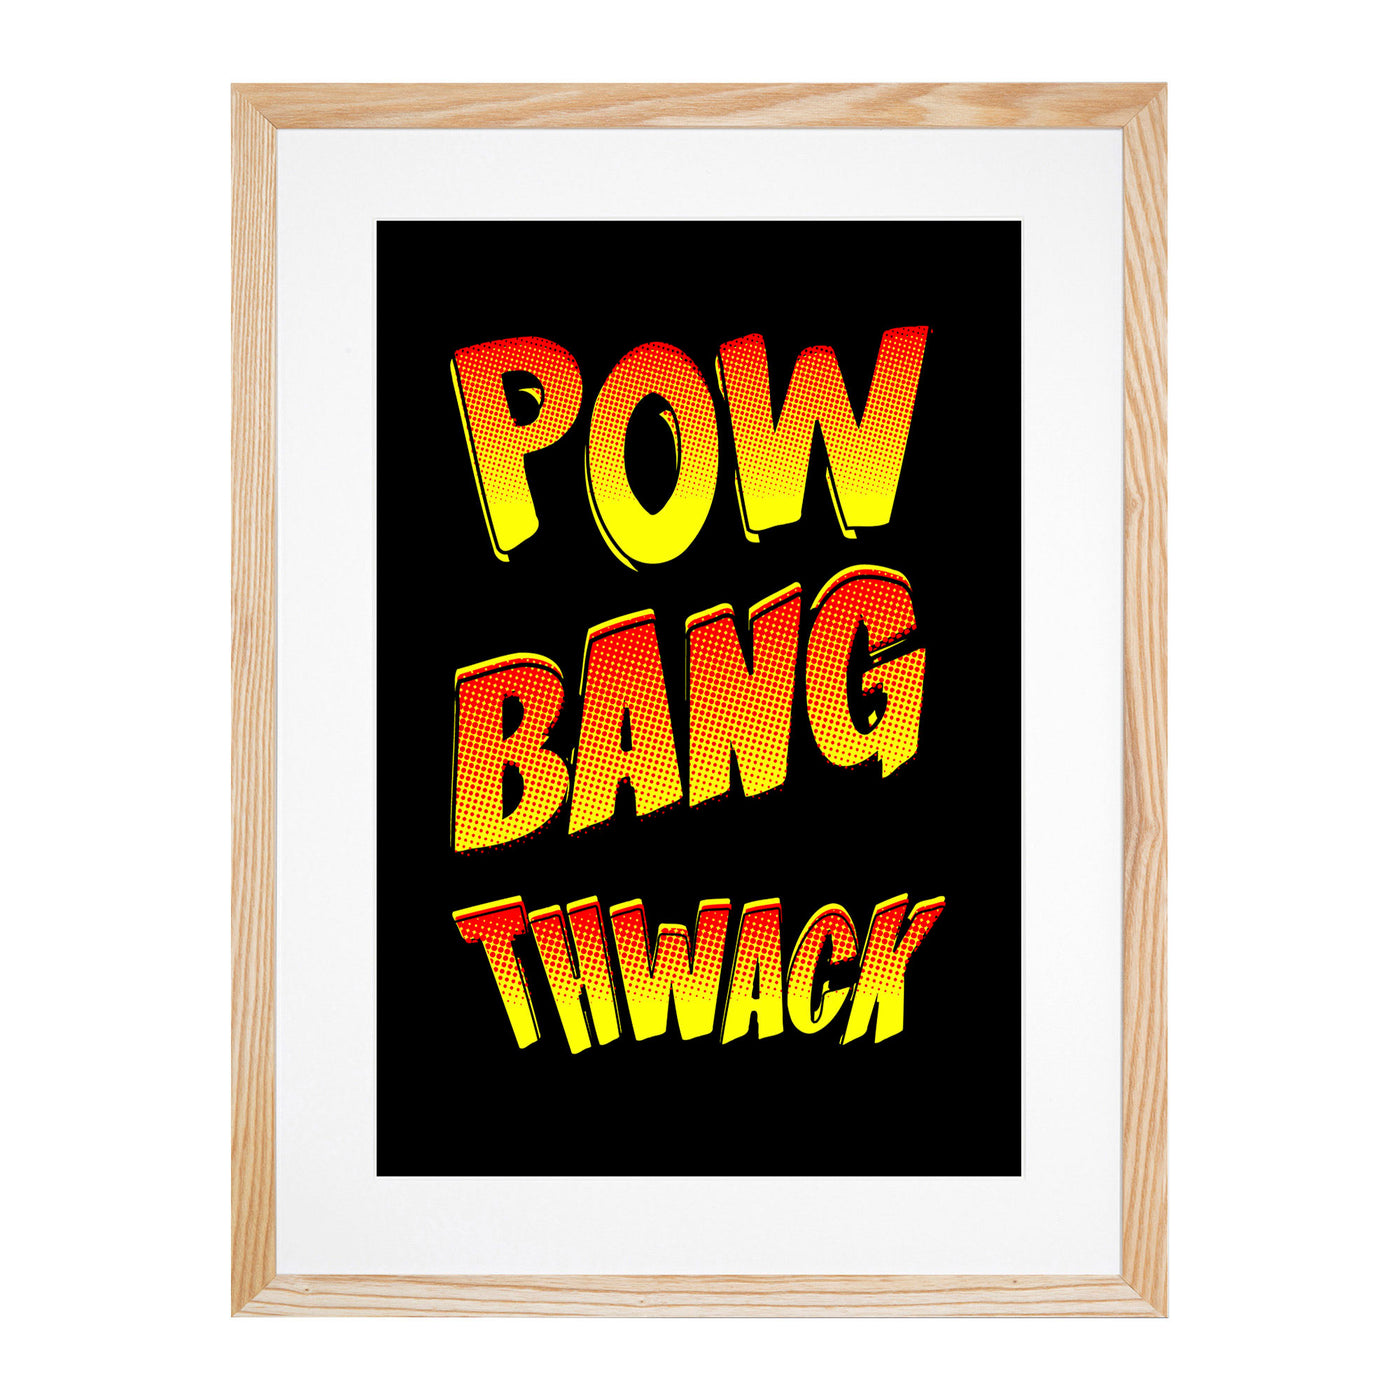 Pow Bang Thwack